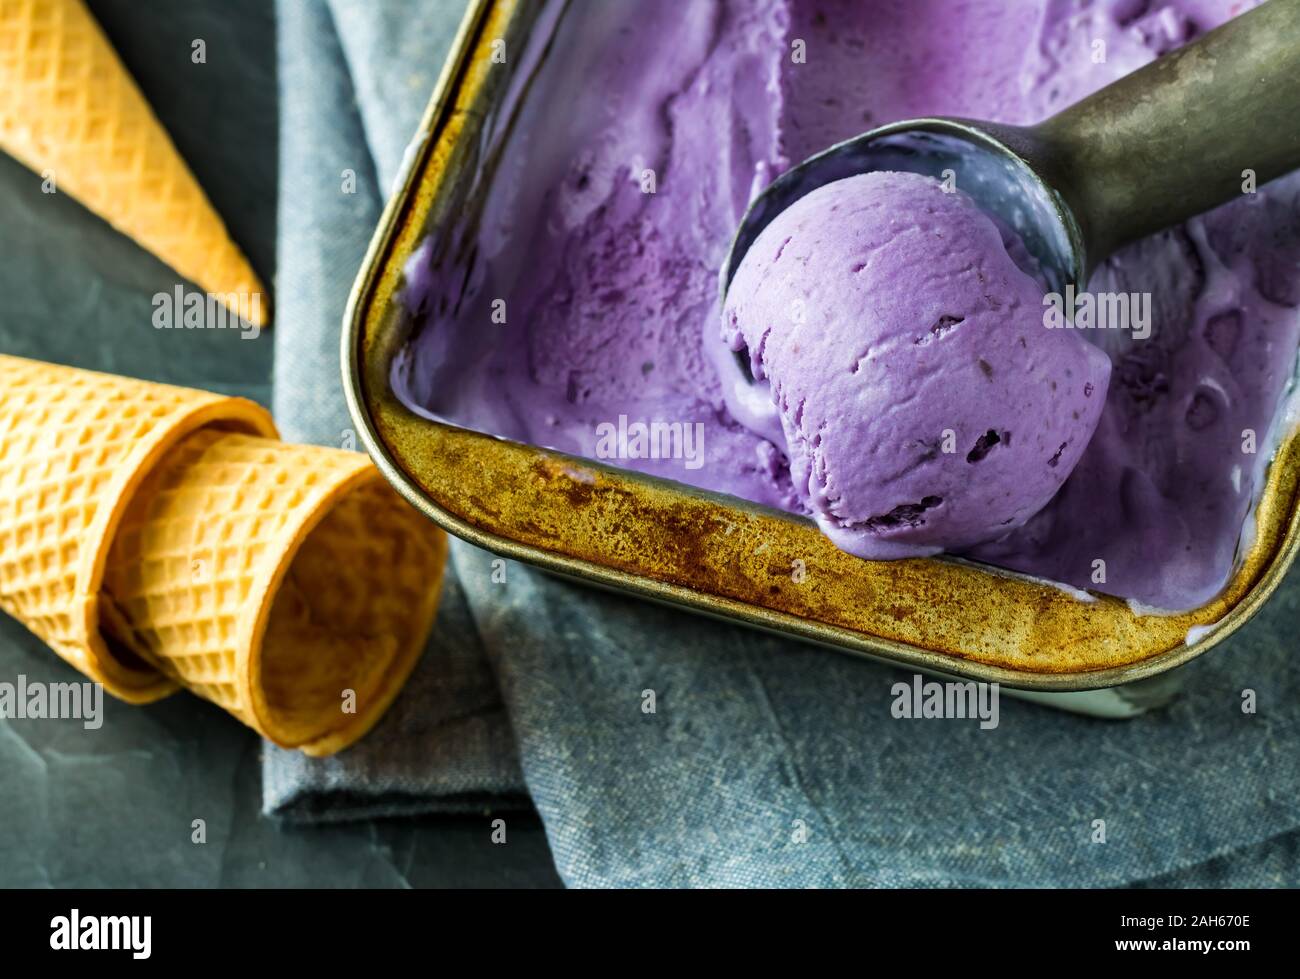 Ice cream cones and Ube ice cream. Stock Photo